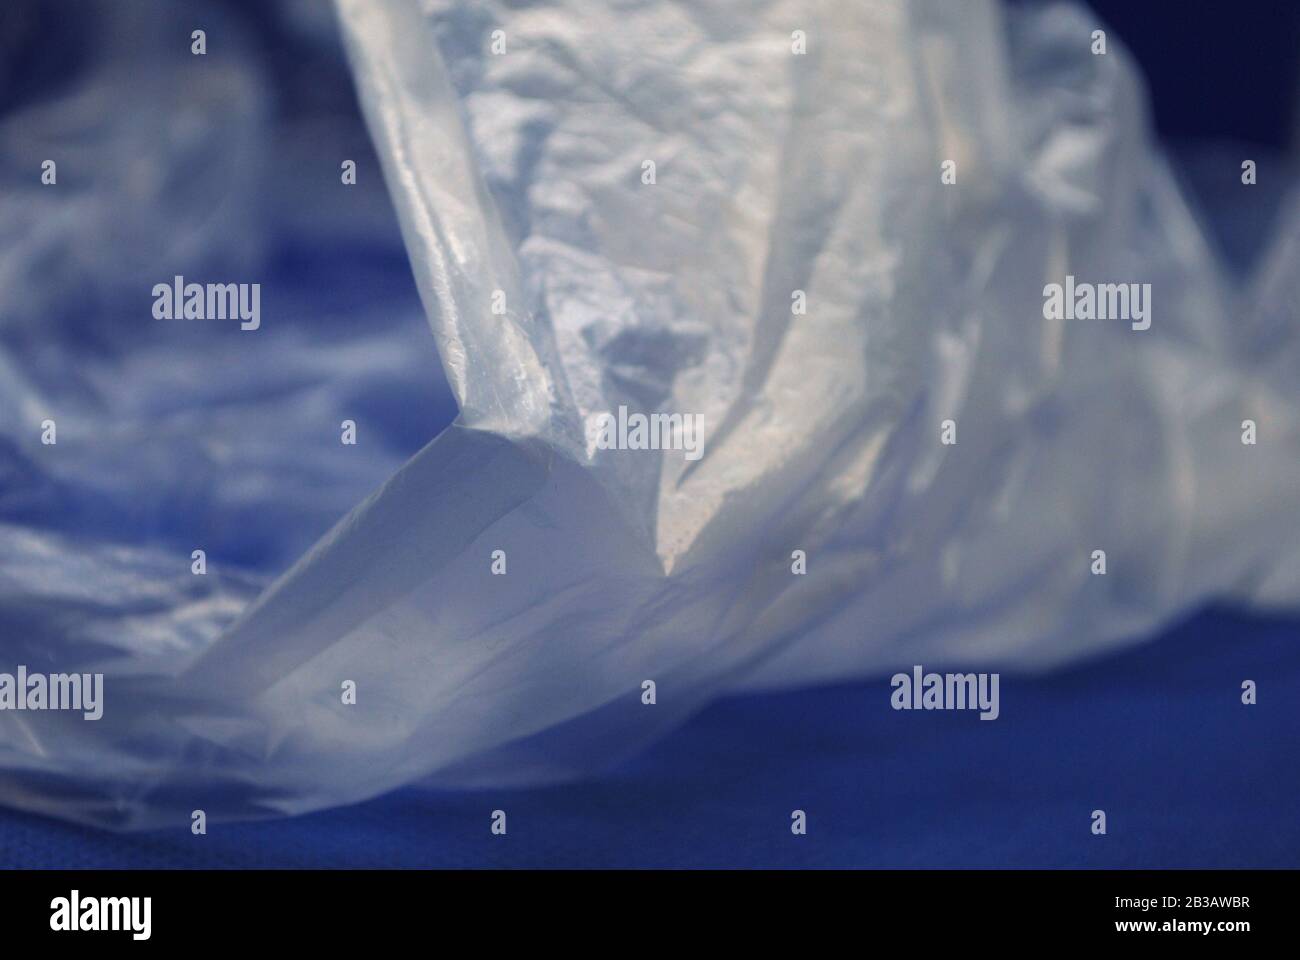 Vue rapprochée du sac en plastique transparent en polyéthylène sur fond bleu Banque D'Images